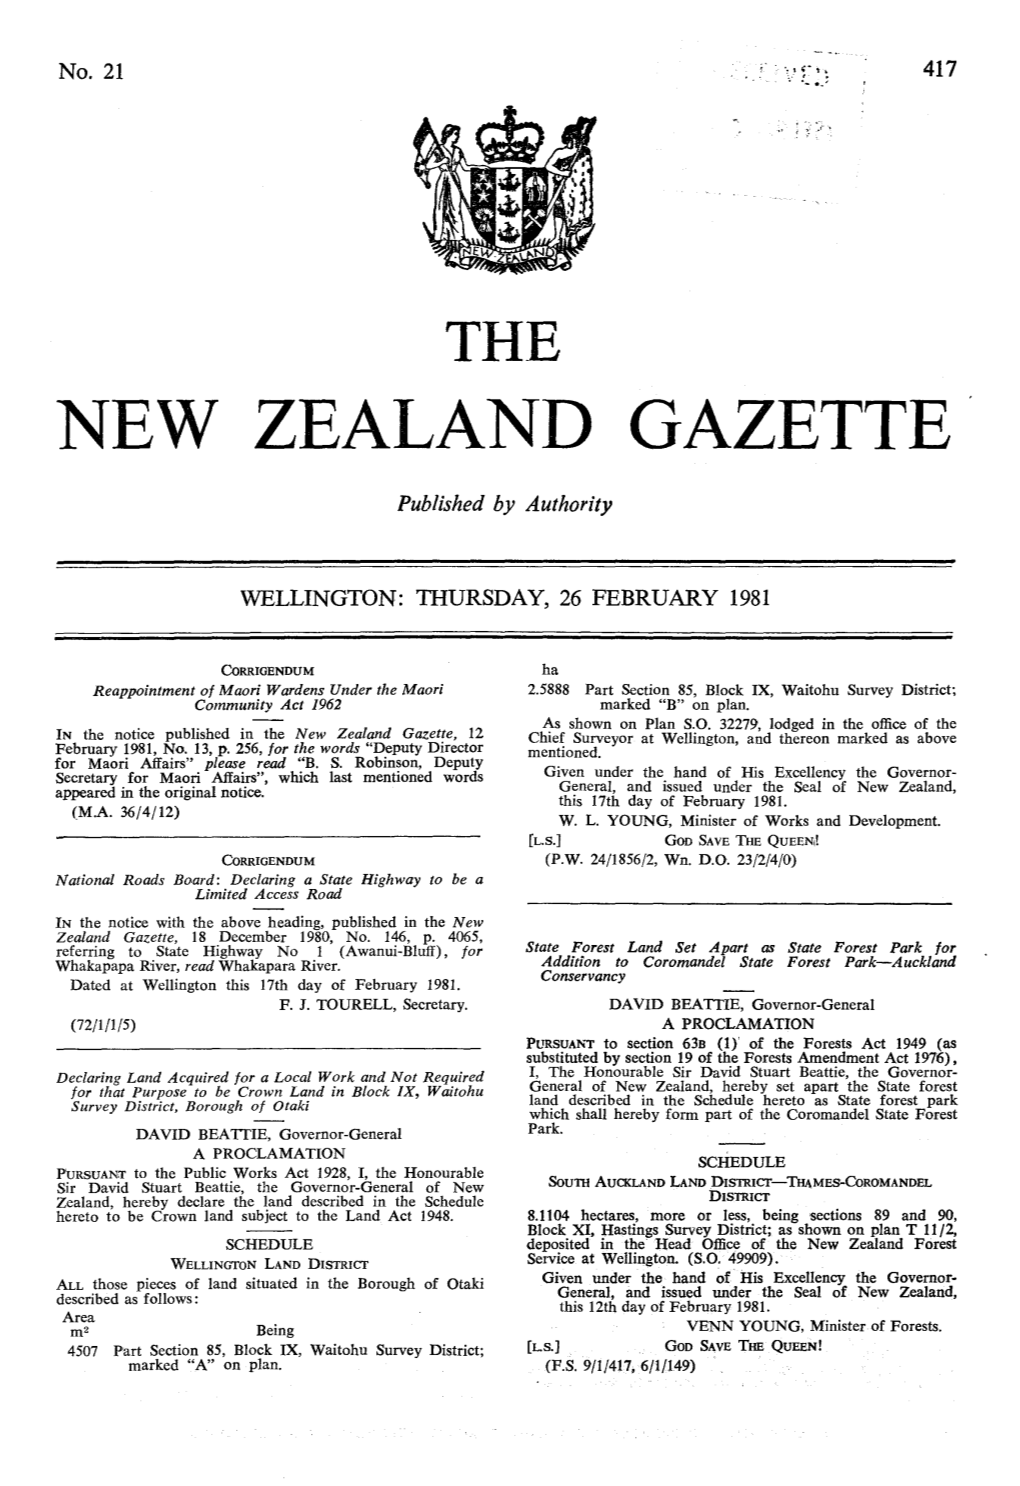 No 21, 26 February 1981